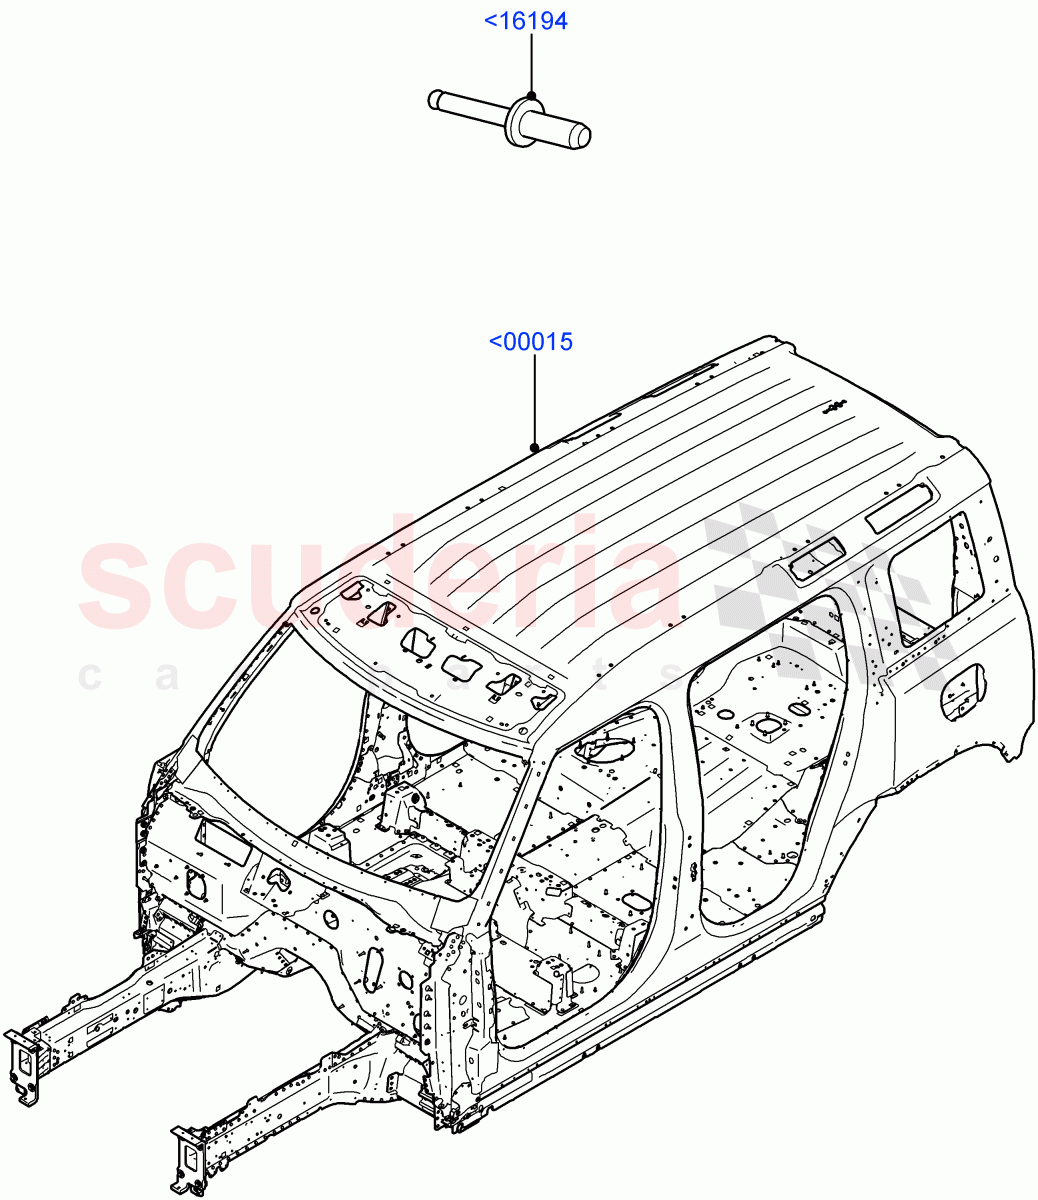 Bodyshell(Standard Wheelbase) of Land Rover Land Rover Defender (2020+) [2.0 Turbo Diesel]